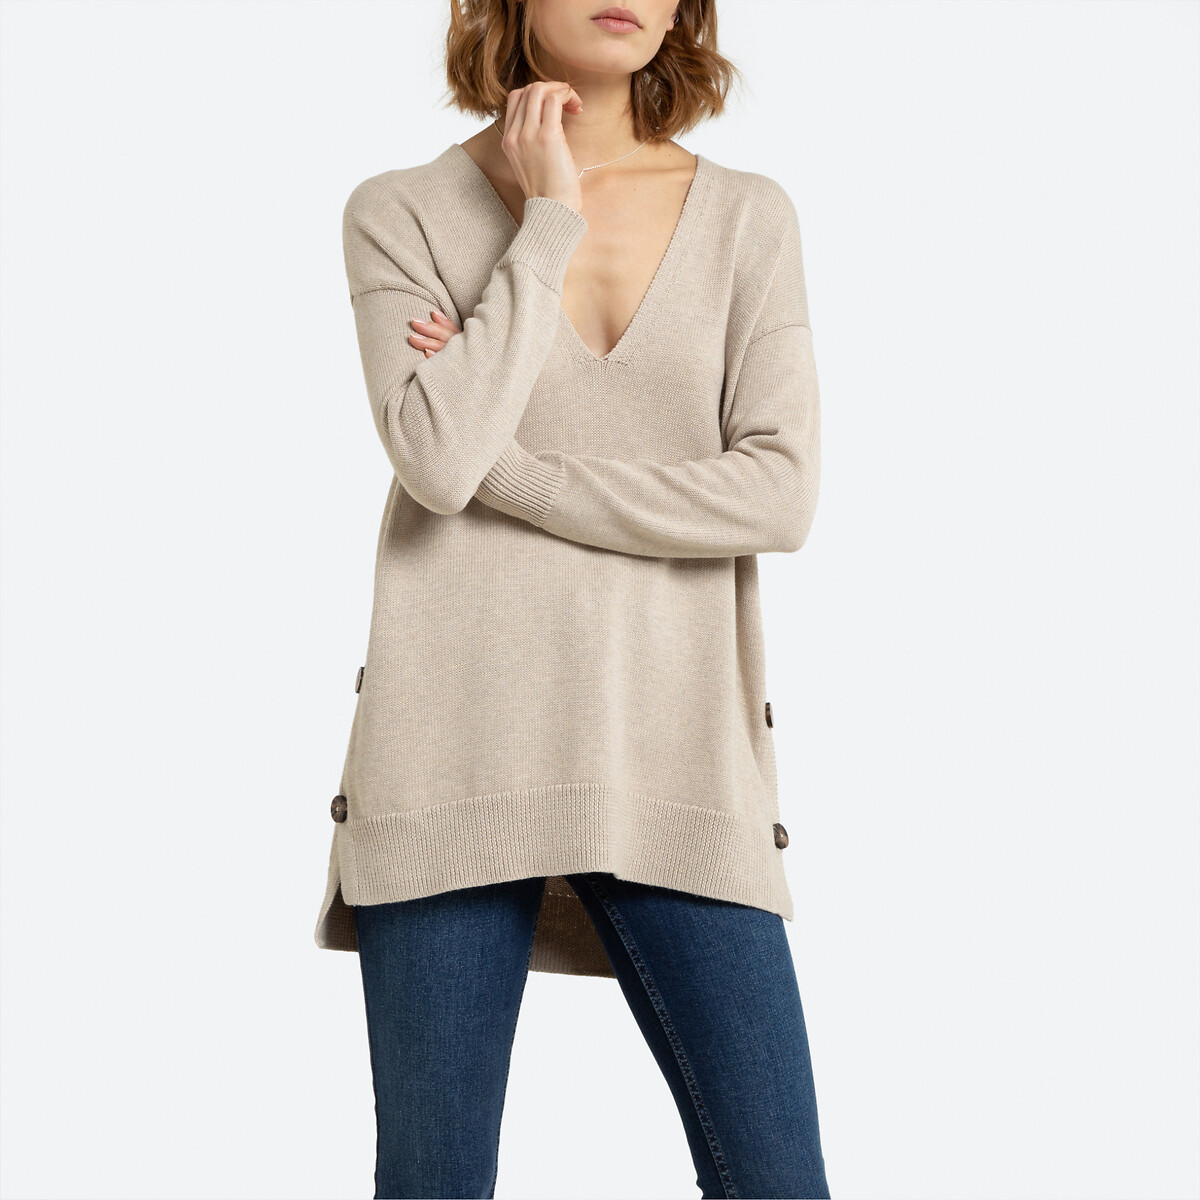 Пуловер La Redoute С V-образным вырезом на пуговицах сбоку XL бежевый, размер XL - фото 1